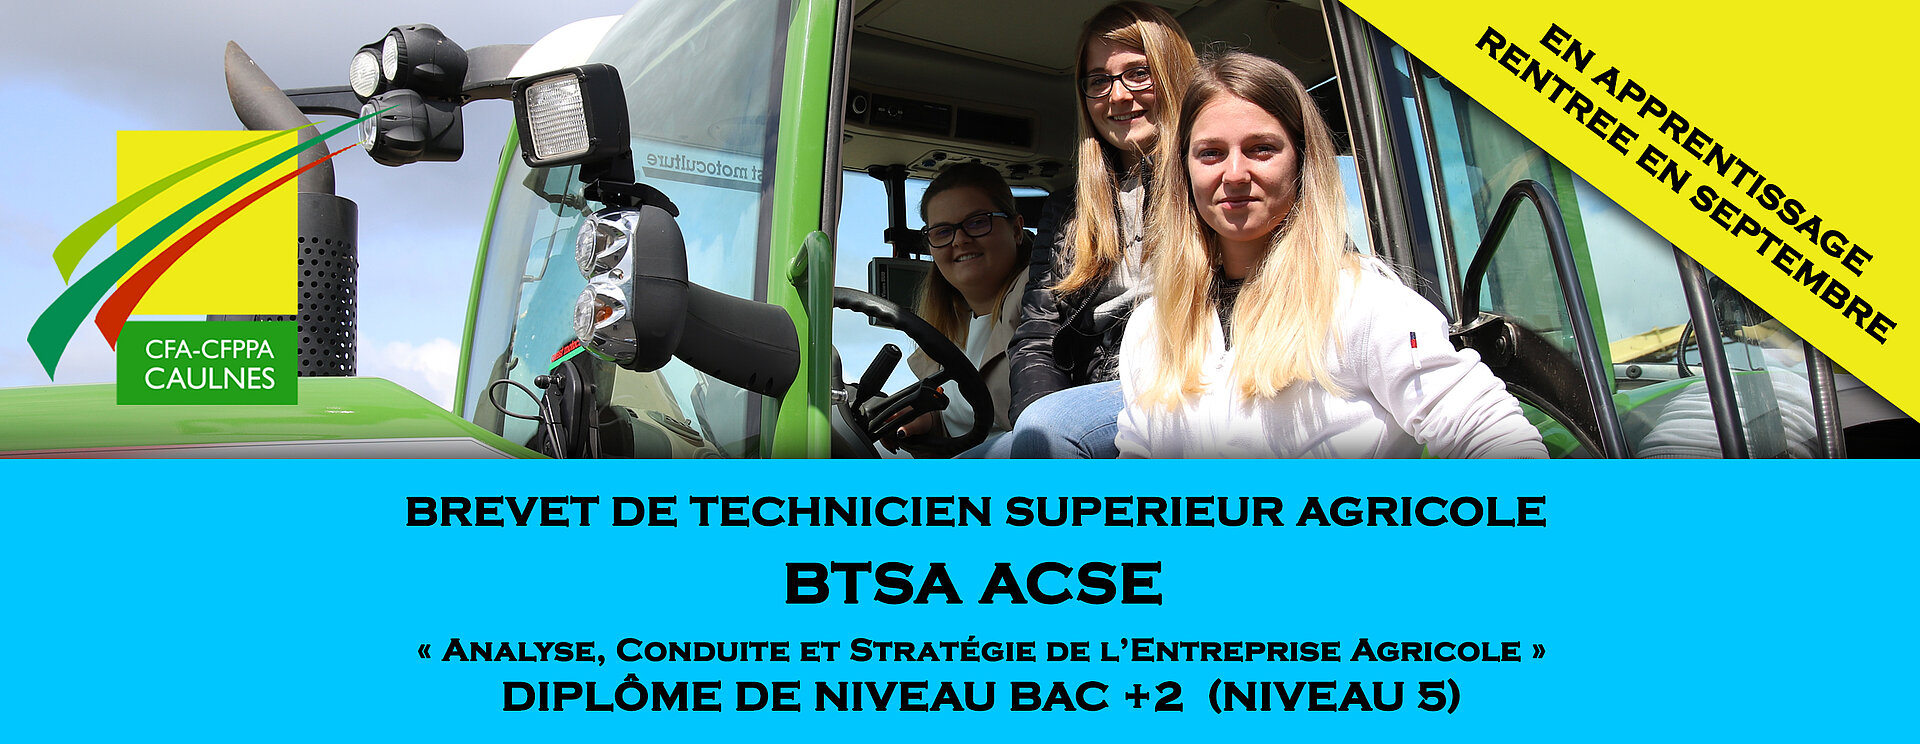 Formation BTS ACSE en Bretagne au CFA de Caulnes 